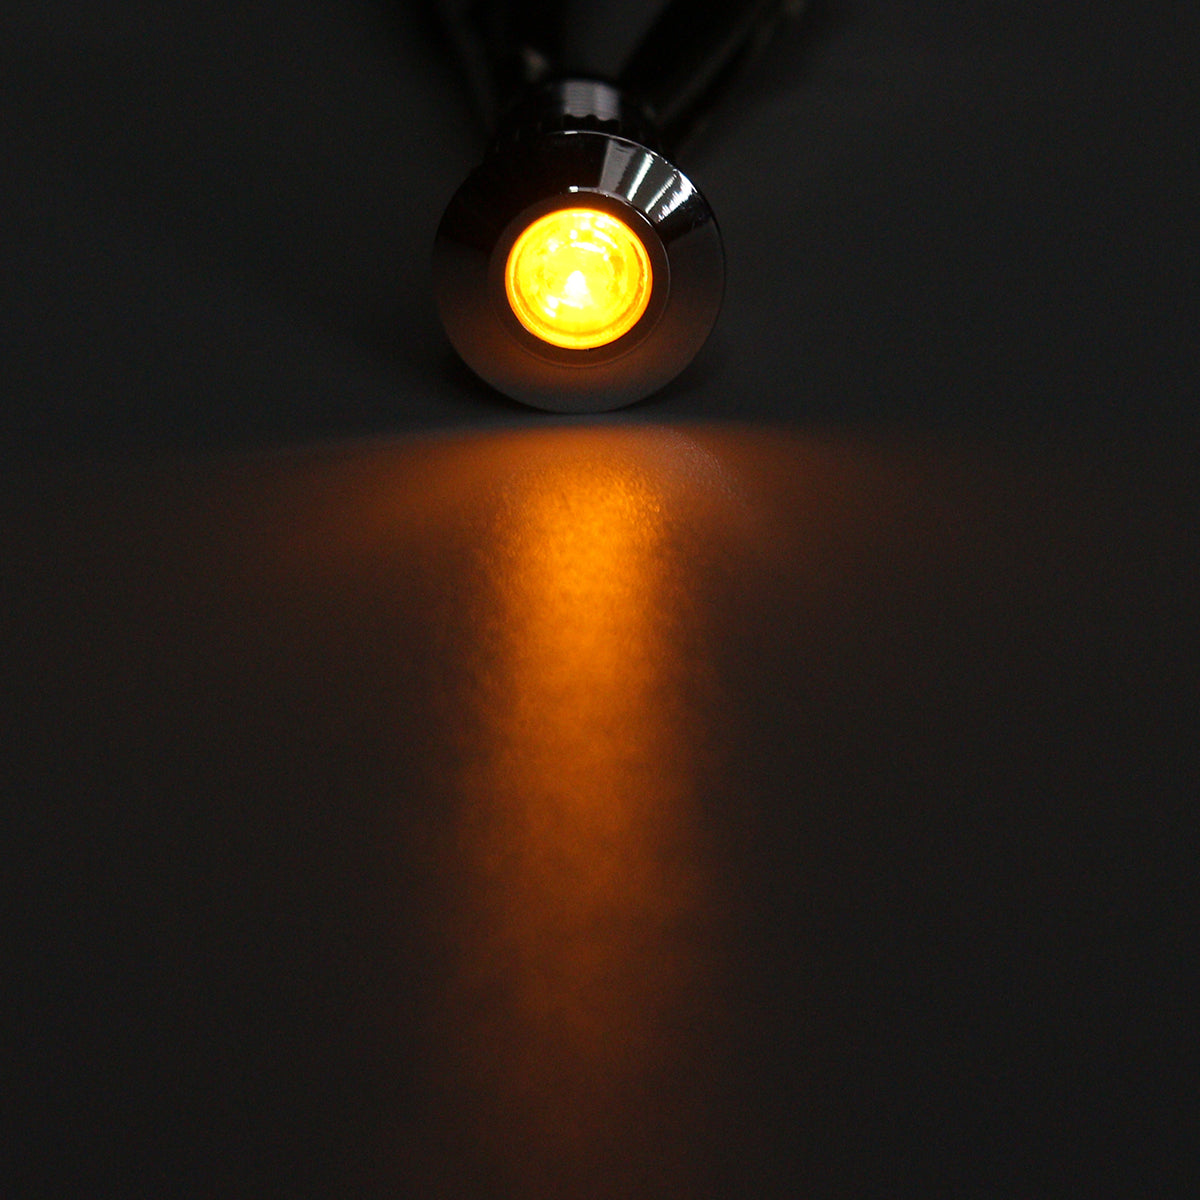 Dark Orange 12V Metal 8mm LED Panel Dash Lamp Warning Light Indicator Waterproof